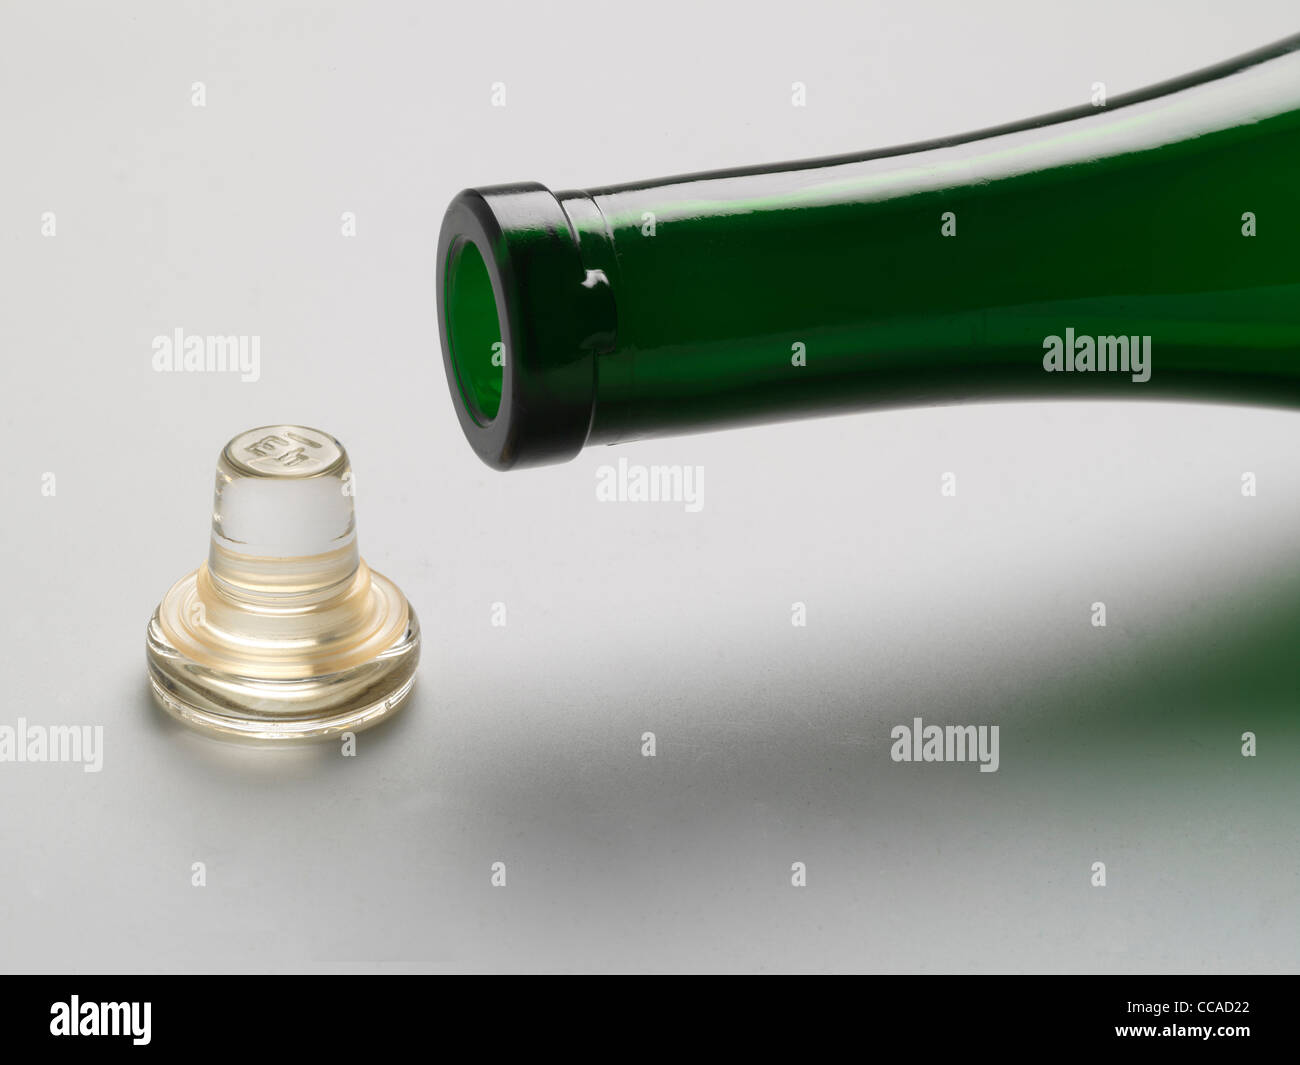 Weinflasche Glasstopfen, die den traditionellen Kork ersetzt  Stockfotografie - Alamy